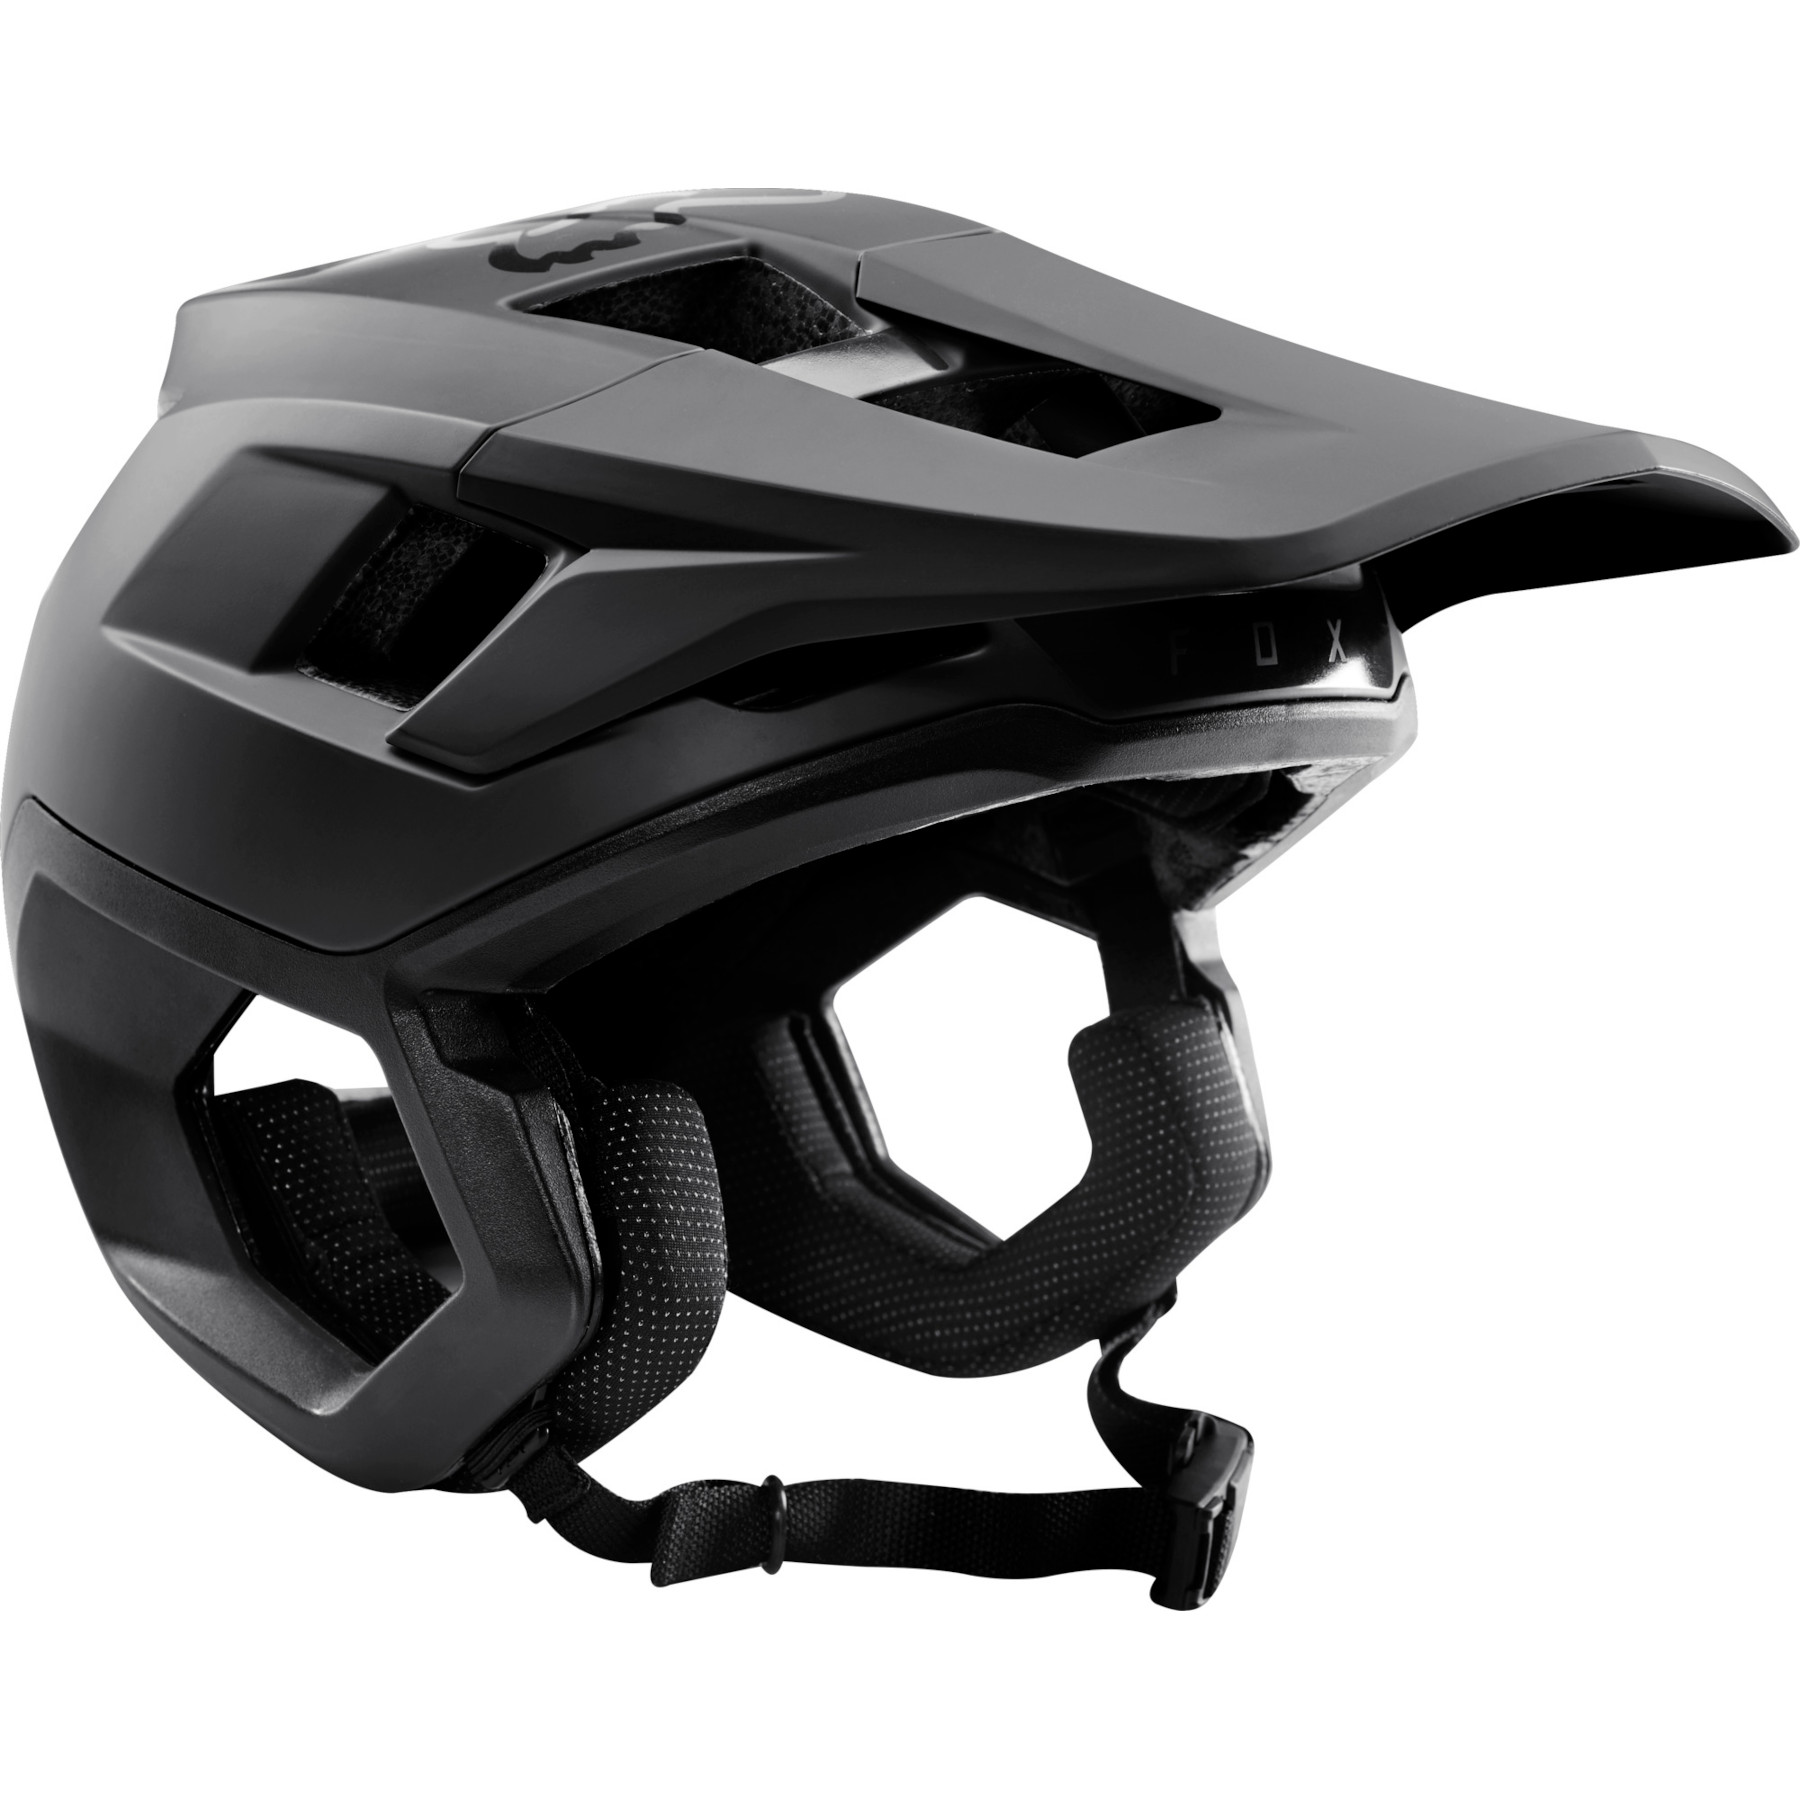 Produktbild von FOX Dropframe Pro Trail Helm - schwarz